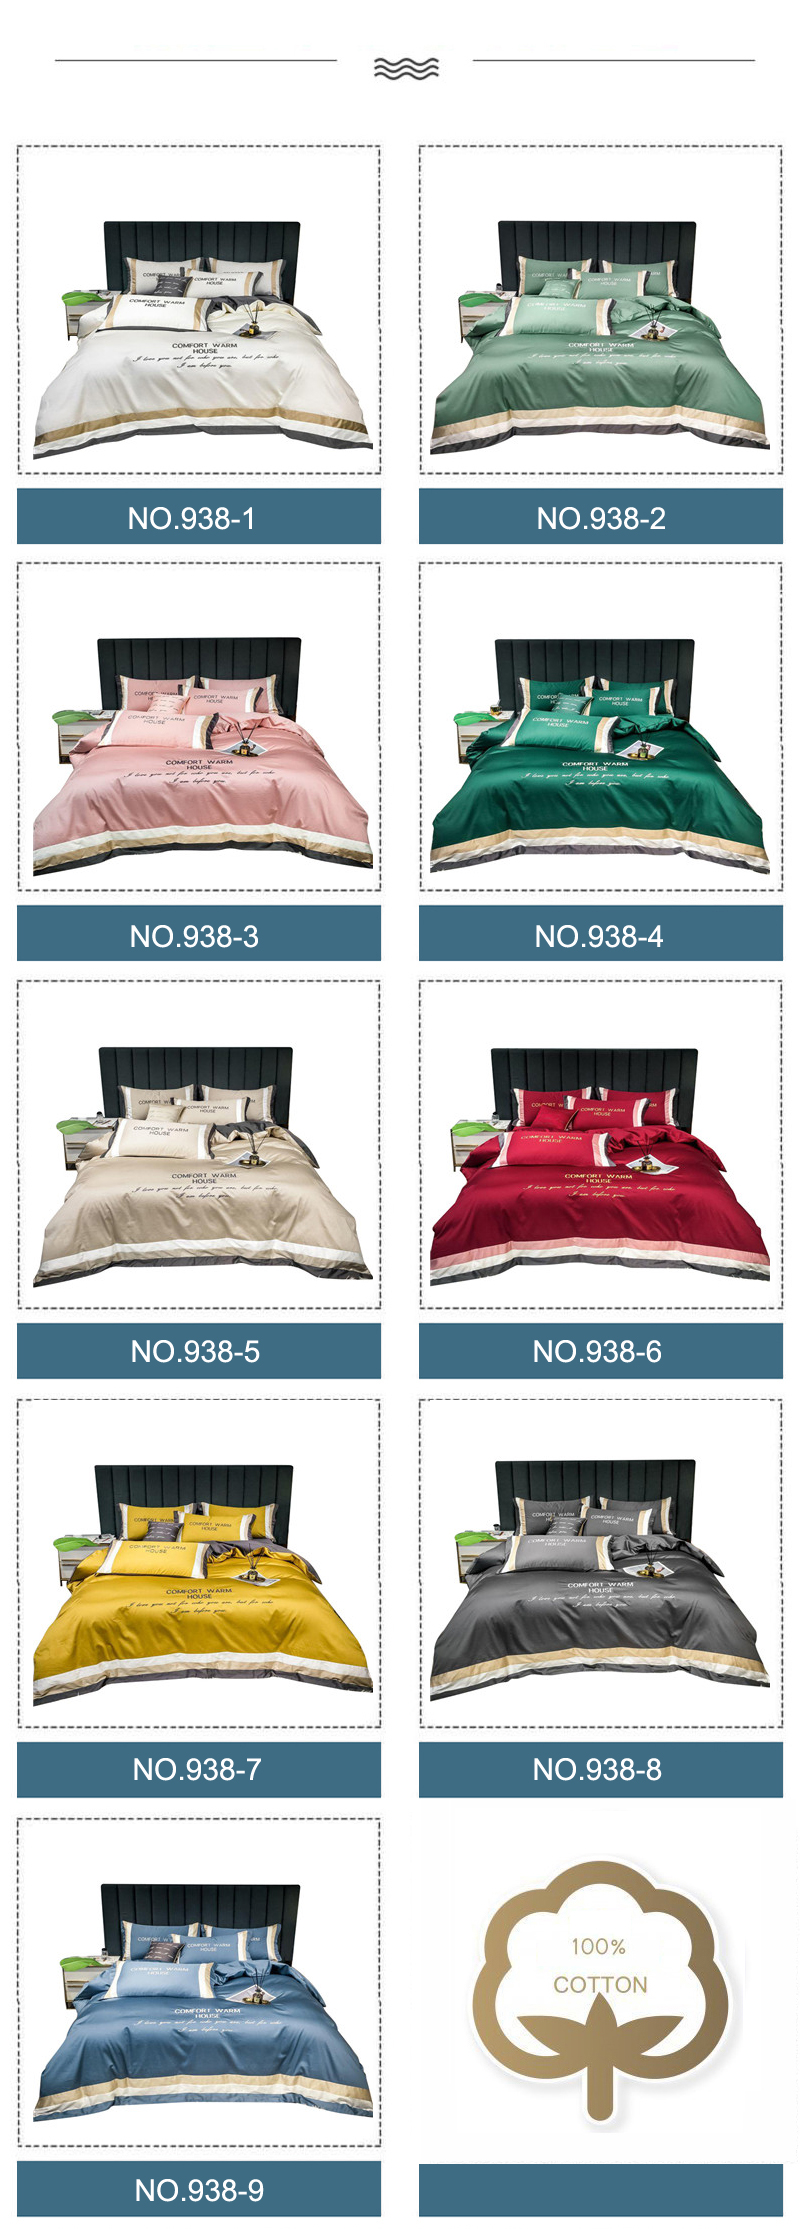 Bed Sheet Deluxe Hotel Comforter Set